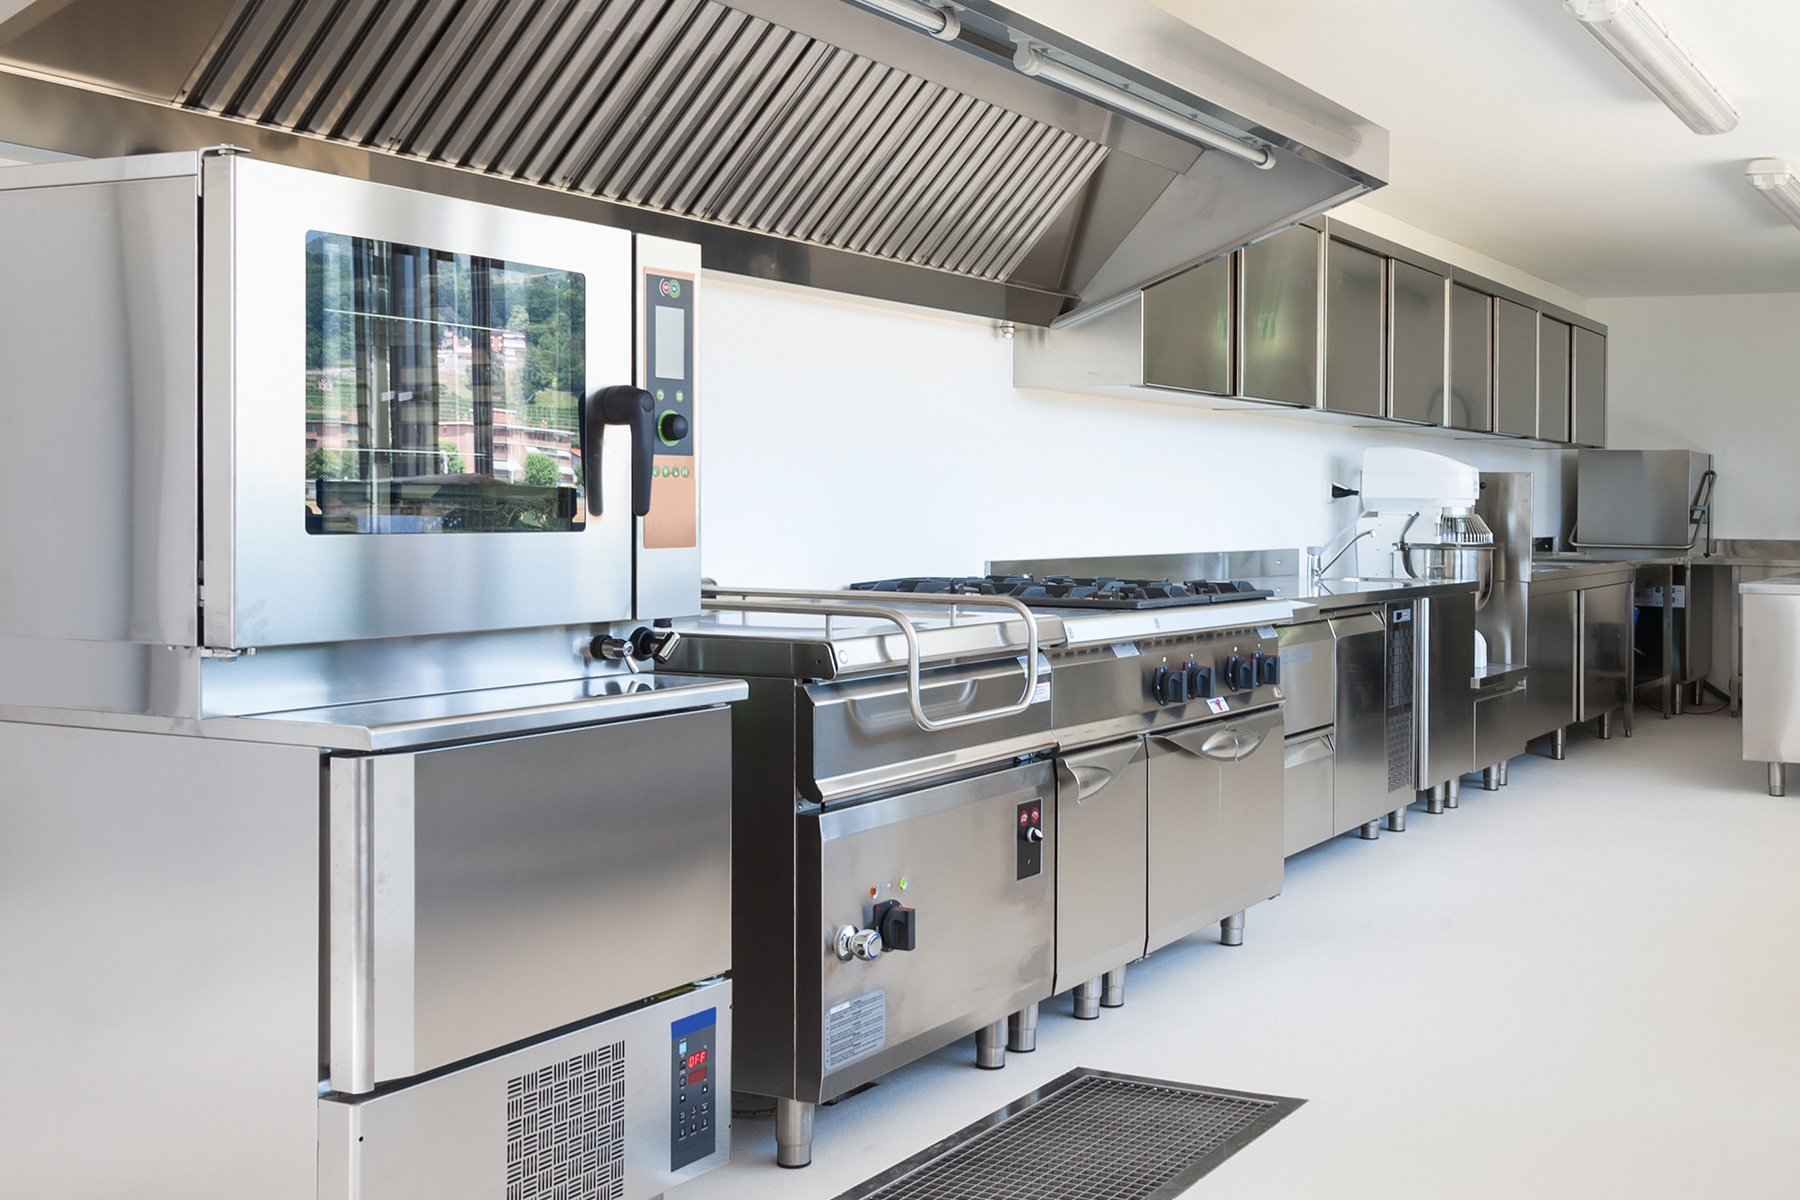 kitchen by design market share